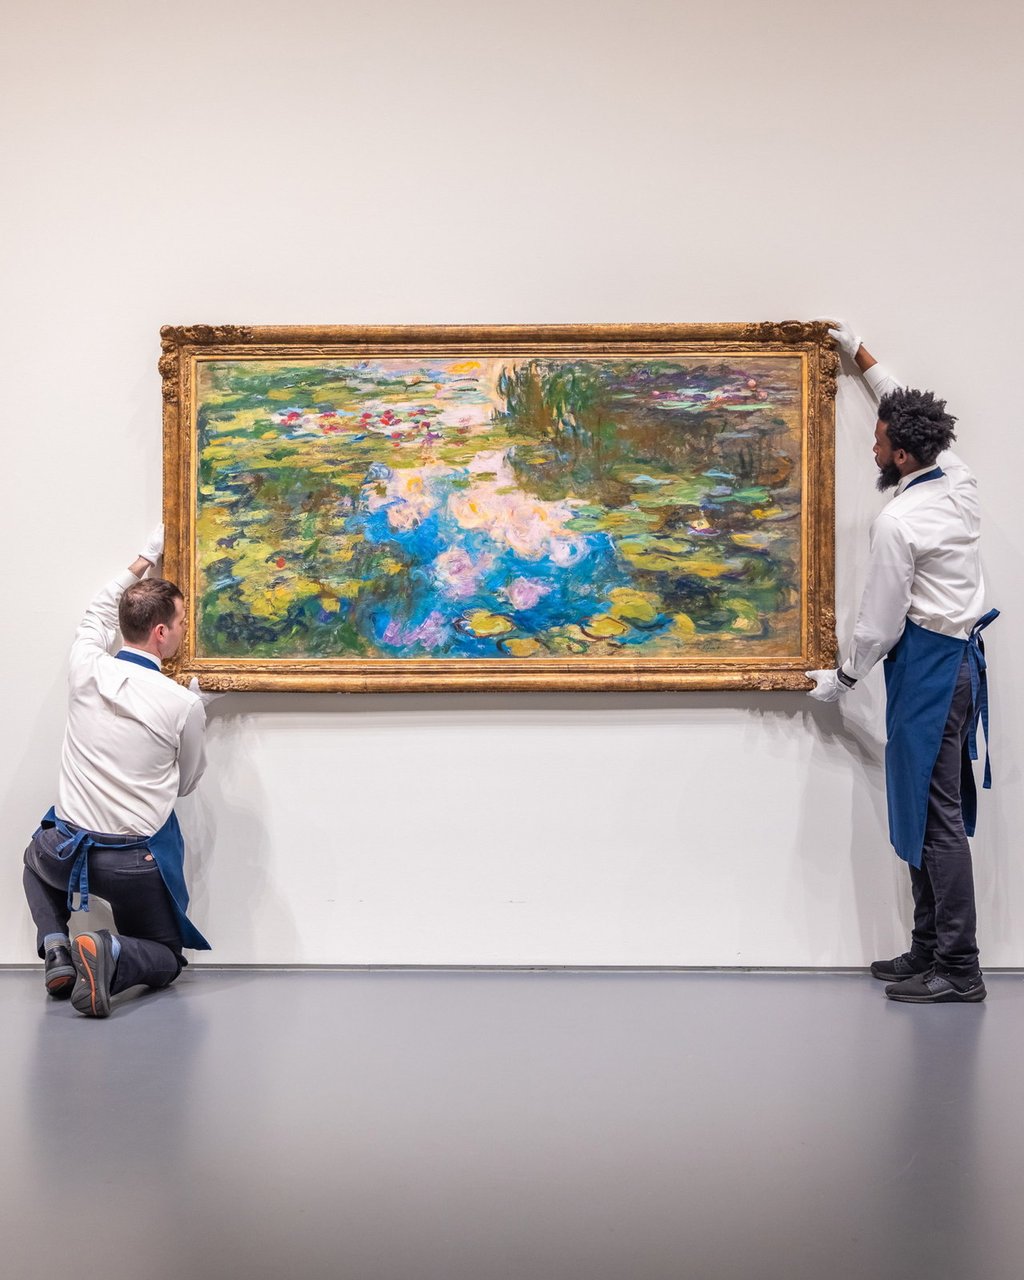 Cuadro de Monet supera los 70 millones de dólares